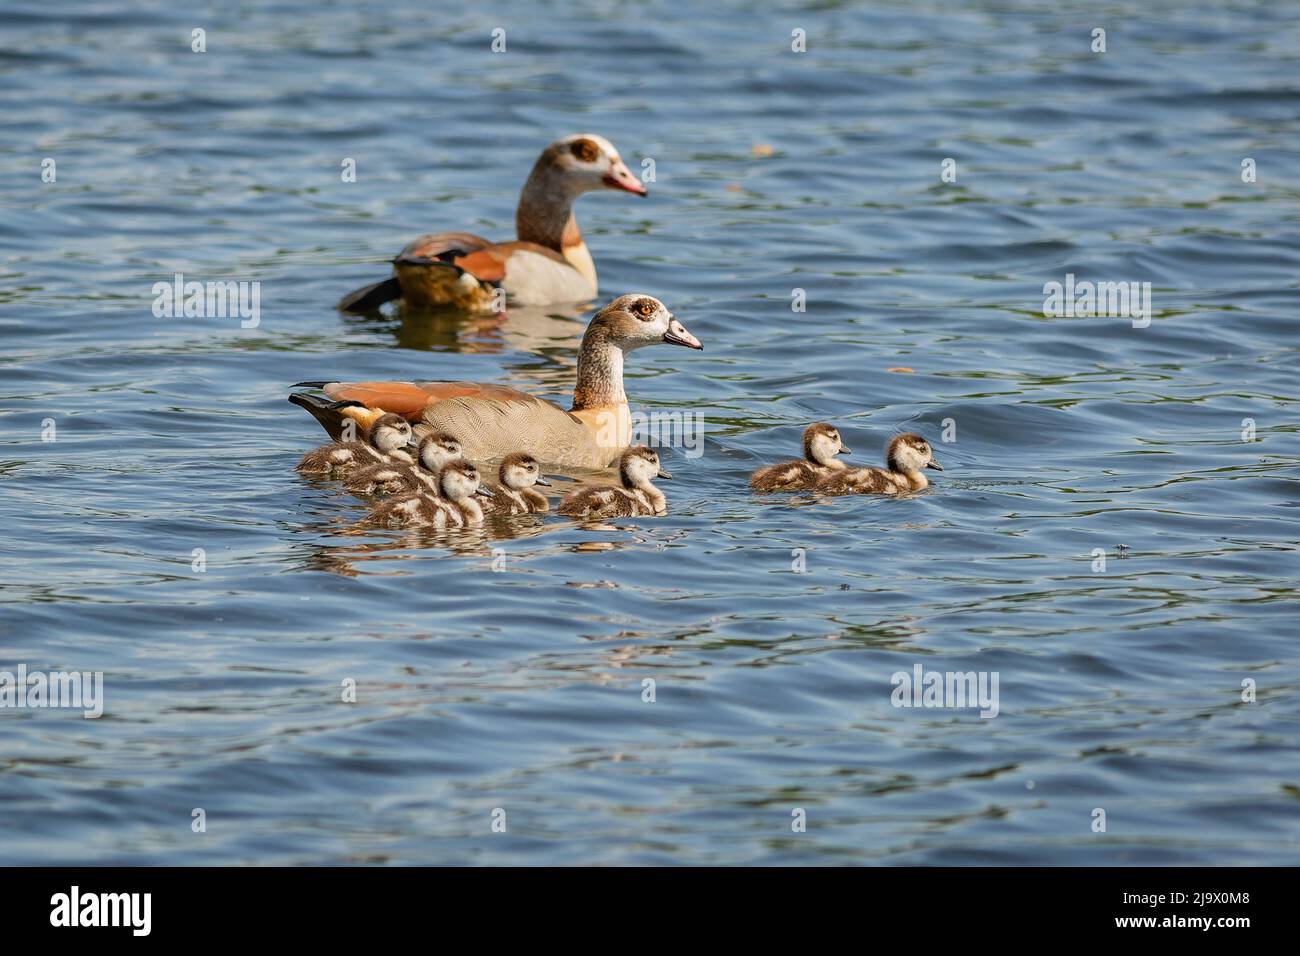 Une famille d'oies égyptiennes, deux parents et de mignons sept sources d'eau, nageant dans l'eau bleue. Jour de printemps ensoleillé au bord d'un lac. Banque D'Images